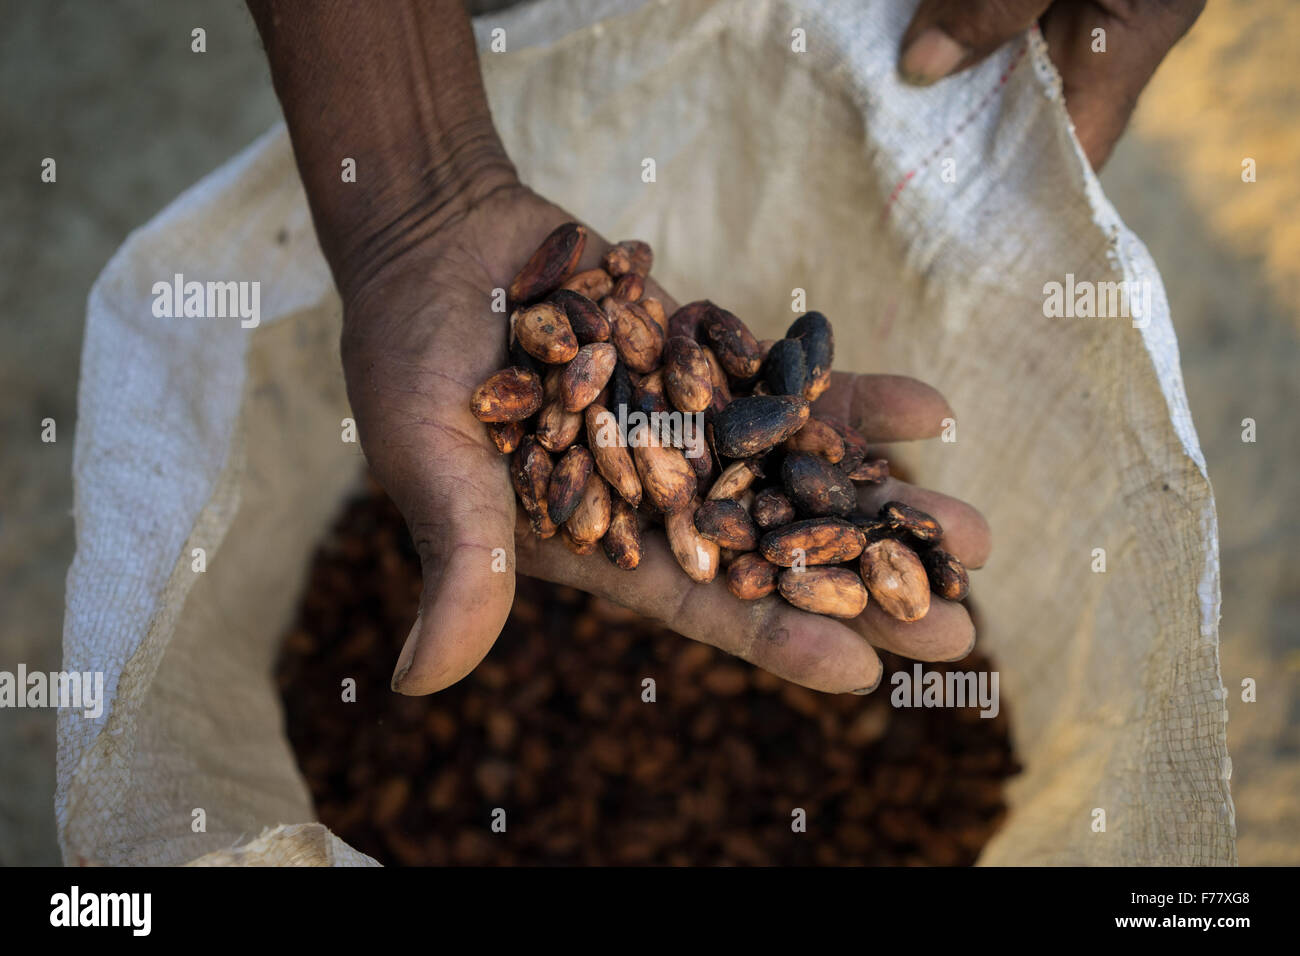 Un agriculteur détient un lot de fèves de cacao séchées prêtes pour l'expédition à la coopérative point de collecte pour le traitement 23 février 2015 dans l'île de la Amargura, Caceres, la Colombie. Les cabosses de cacao fermentées et séchées sont en train de devenir la base de chocolat. Banque D'Images